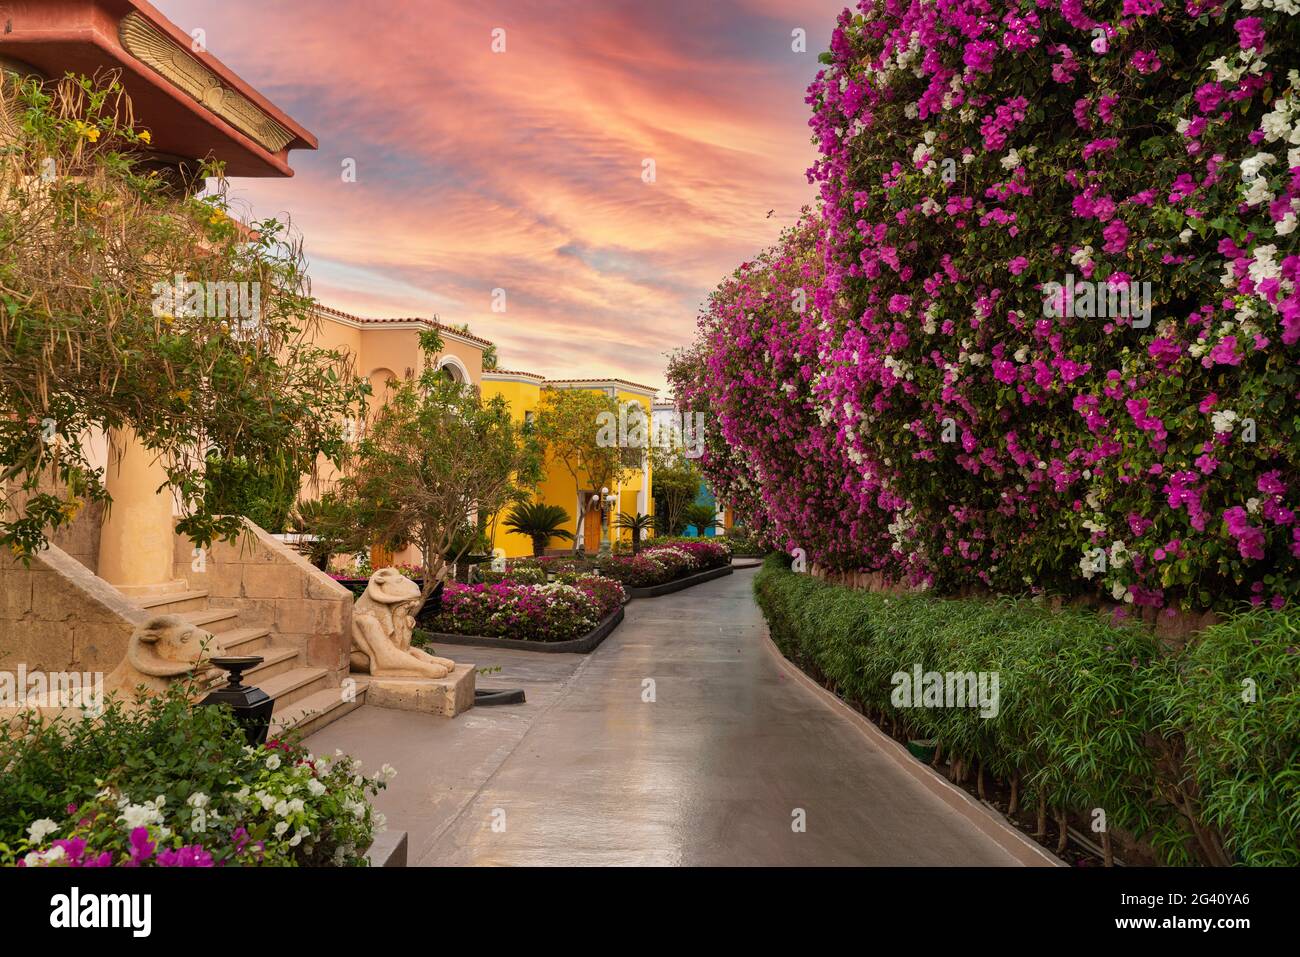 Belle zone de l'hôtel avec des arbustes fleuris et une architecture intéressante. Promenez-vous le long de la belle rue fleurie Banque D'Images